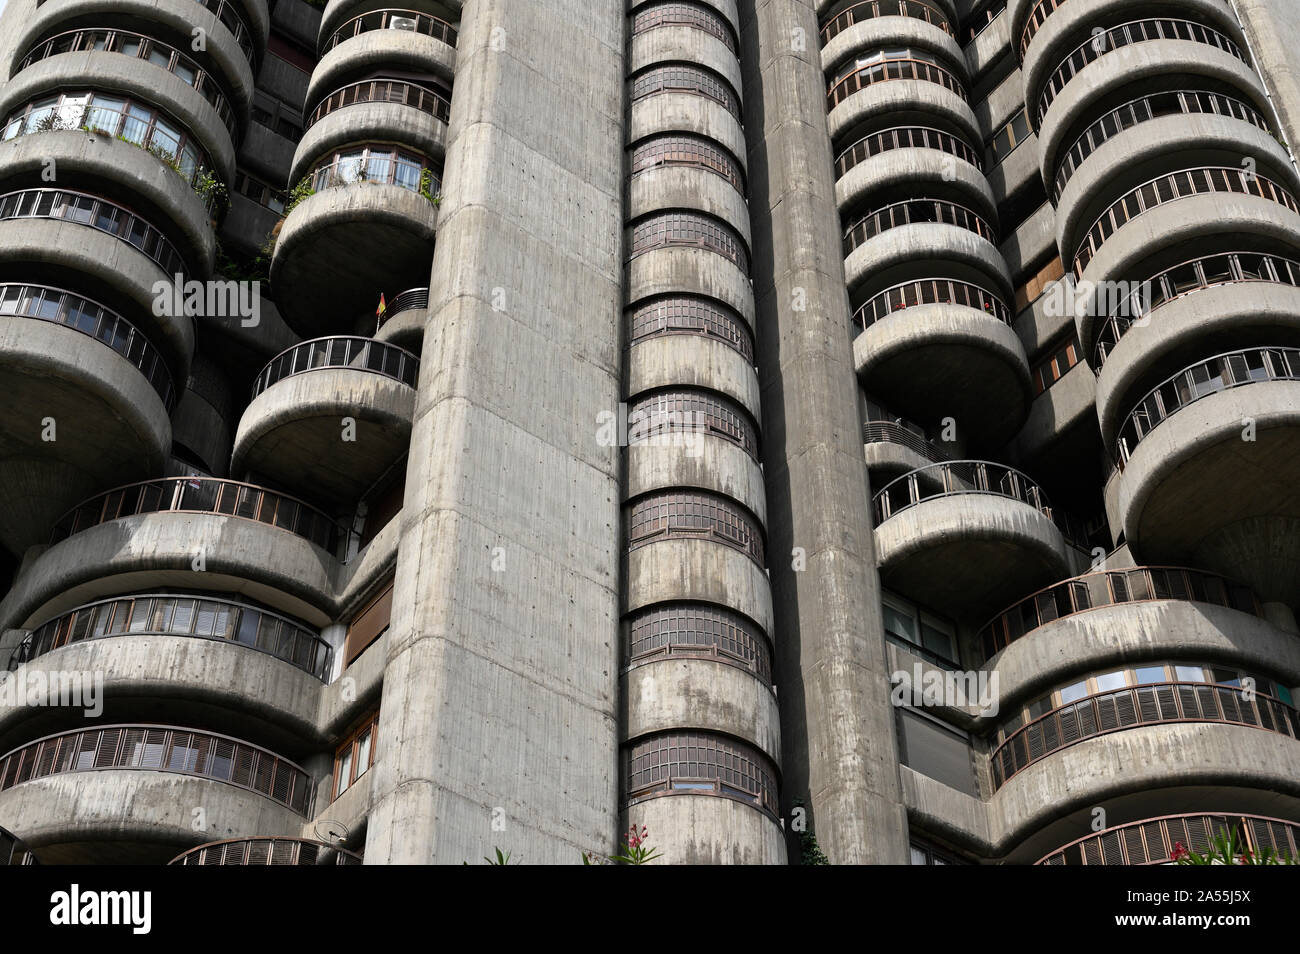 Madrid. L'Espagne. Edificio Torres Blancas sur l'Avenida de América, conçu par l'architecte espagnol Francisco Javier Sáenz de Oiza (1918-2000), construit en 1961 Banque D'Images